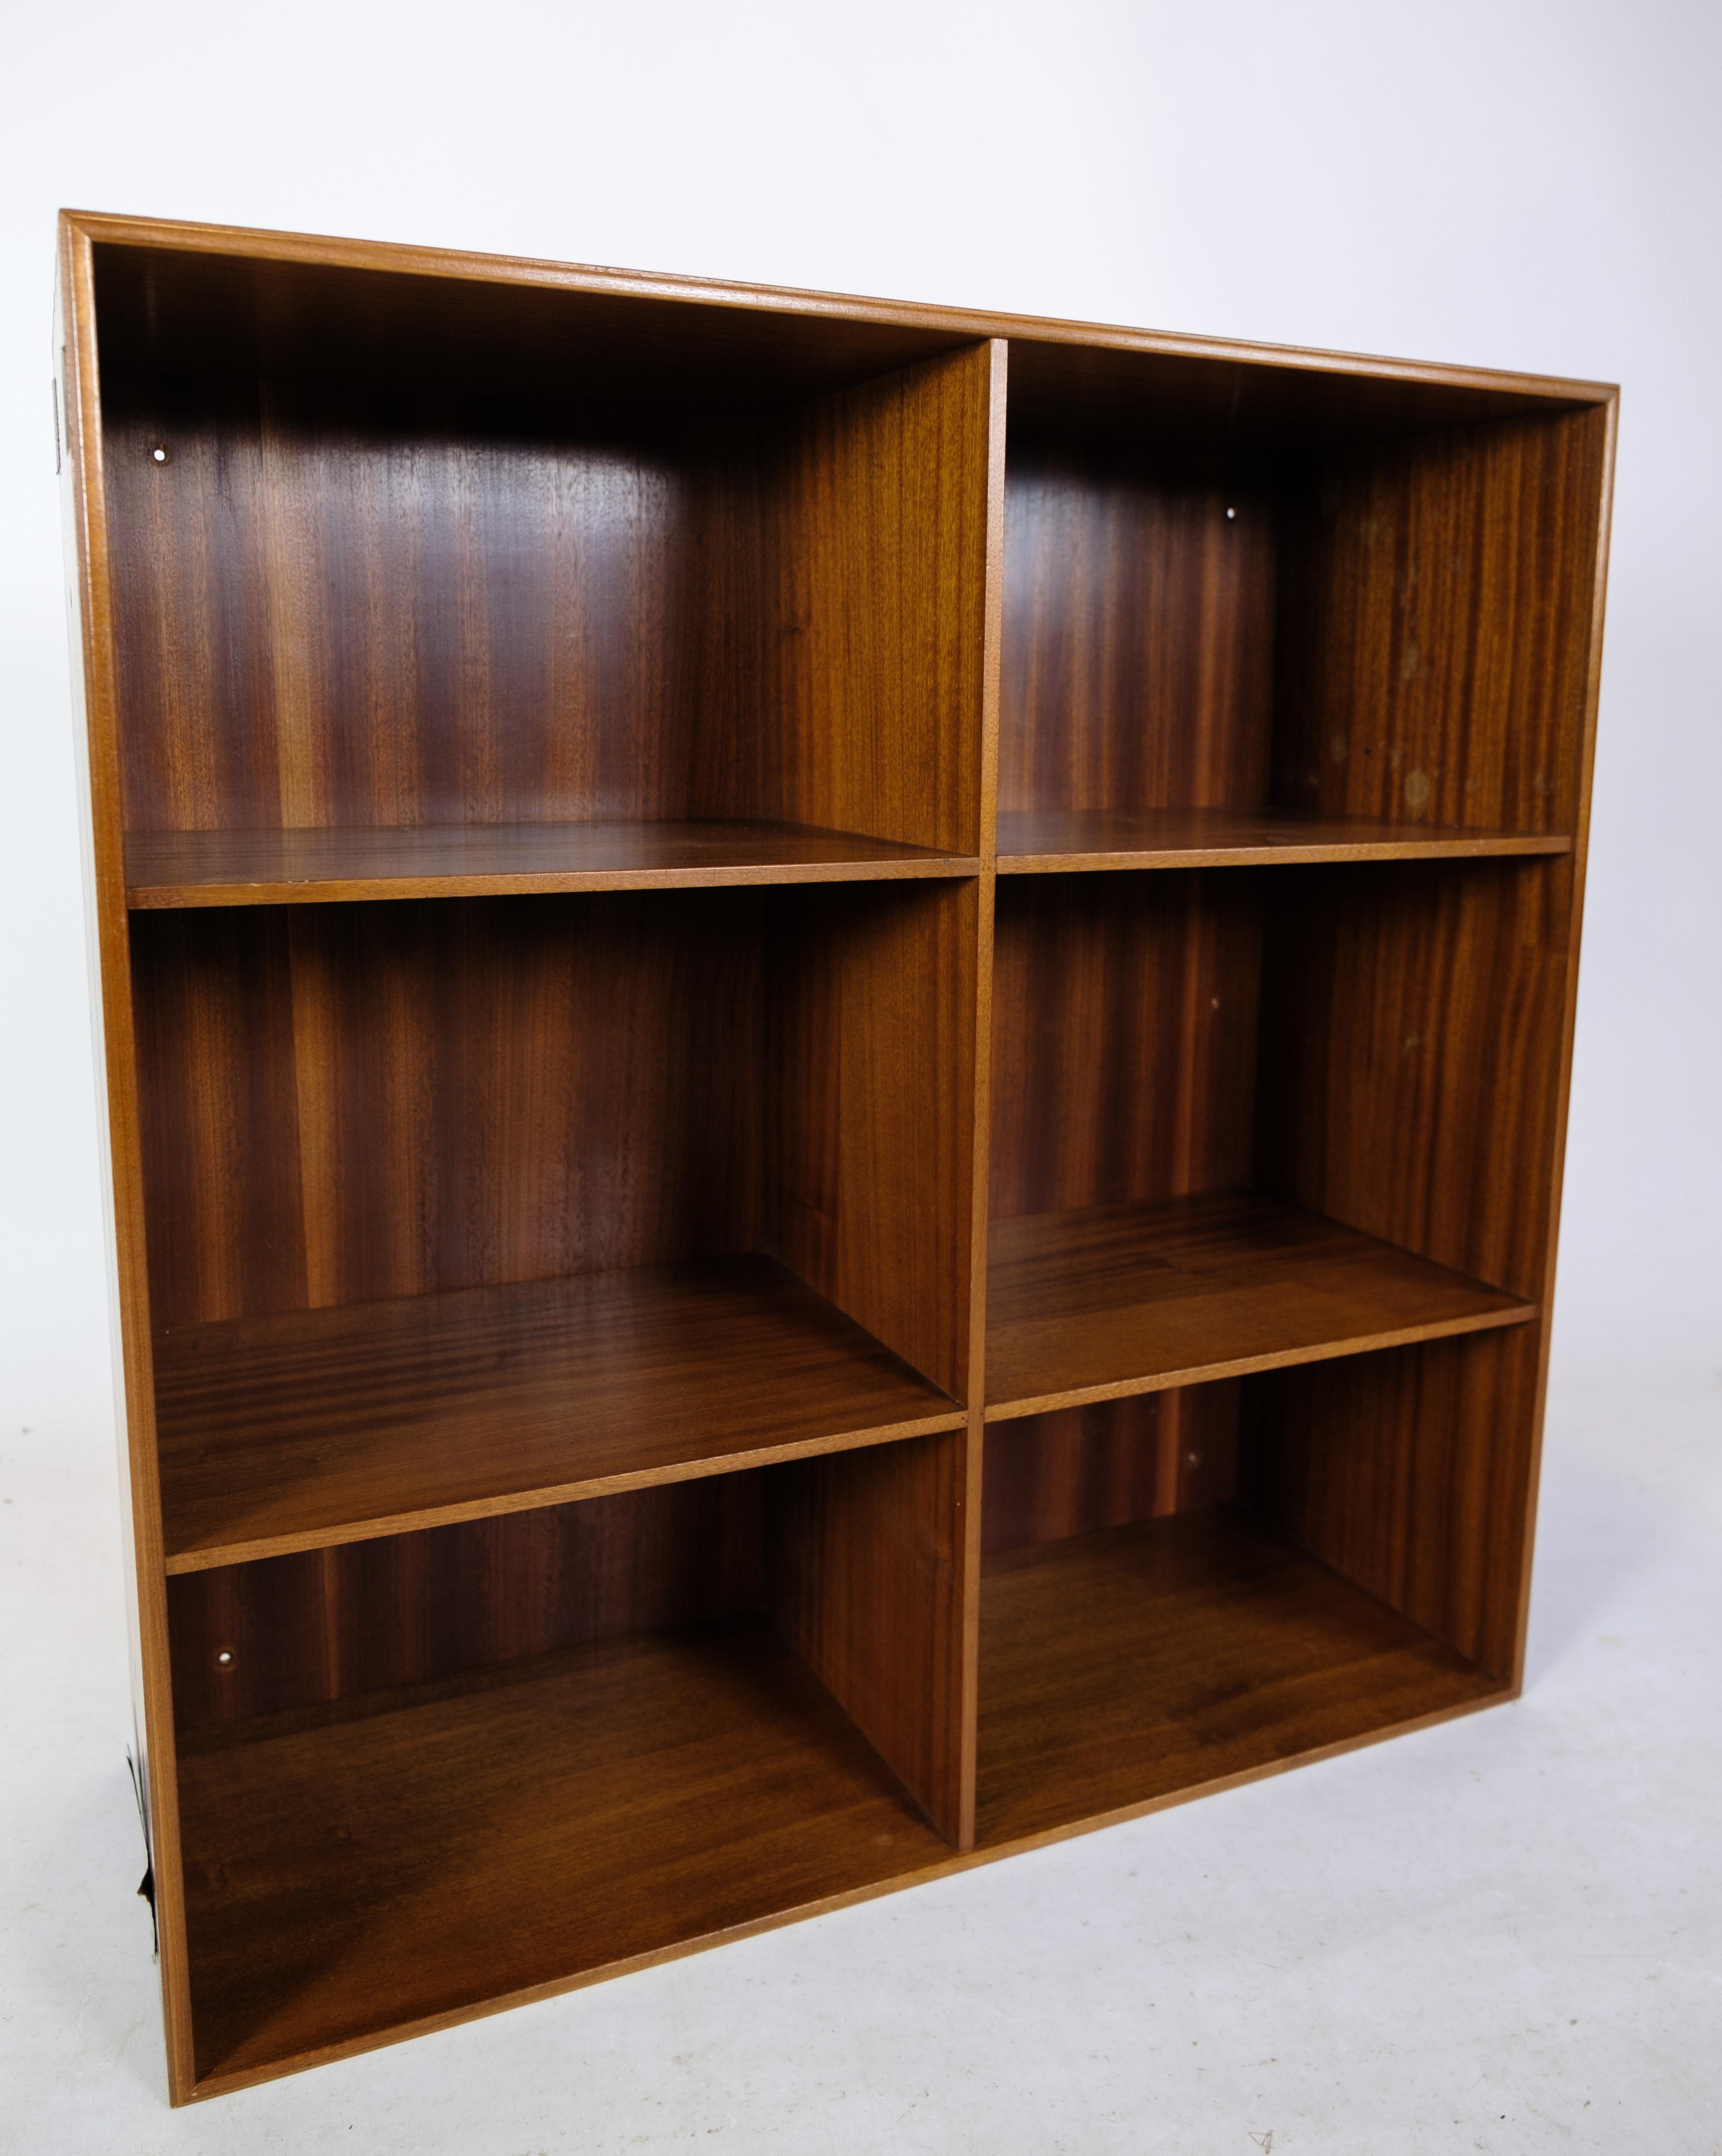 Das von Mogens Koch entworfene und von Rud Rasmussen in den 1960er Jahren hergestellte Bücherregal aus hellem Mahagoni ist ein bemerkenswertes Möbelstück, das Funktionalität und Ästhetik harmonisch miteinander verbindet.

Mogens Koch, ein